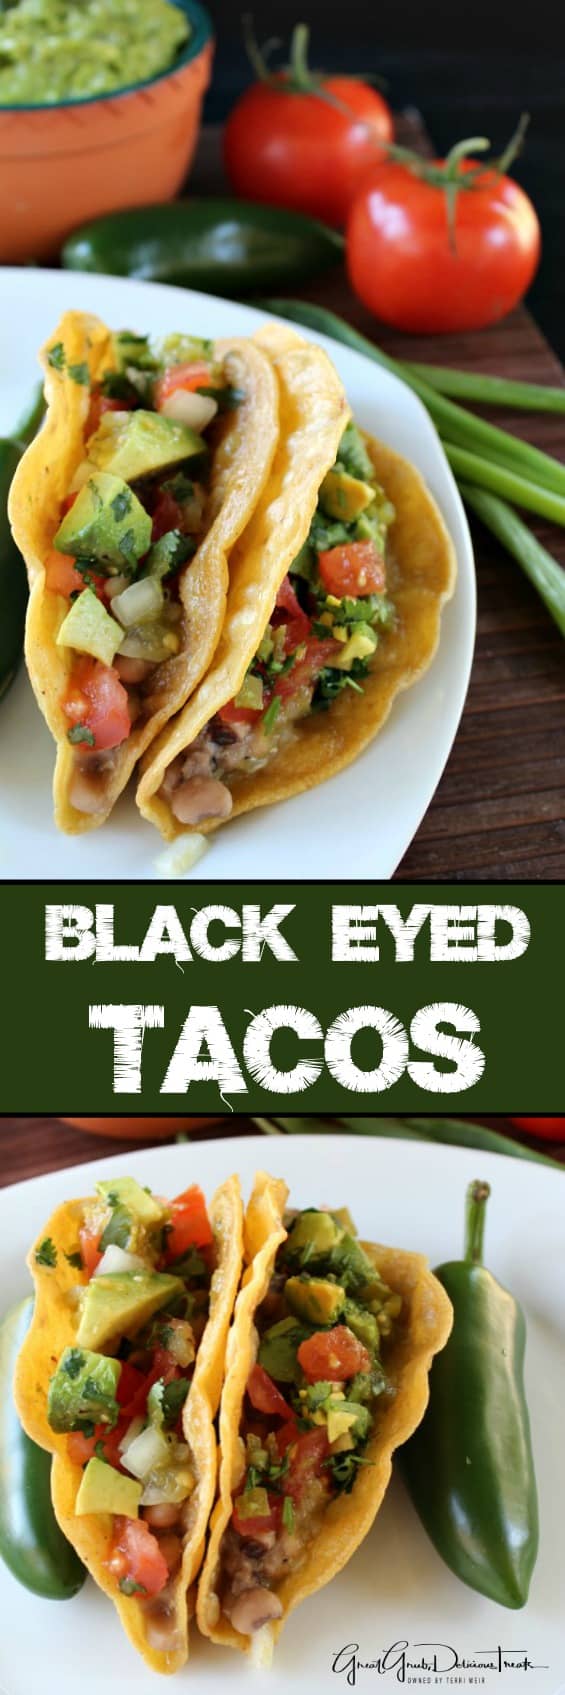 Black Eyed Tacos